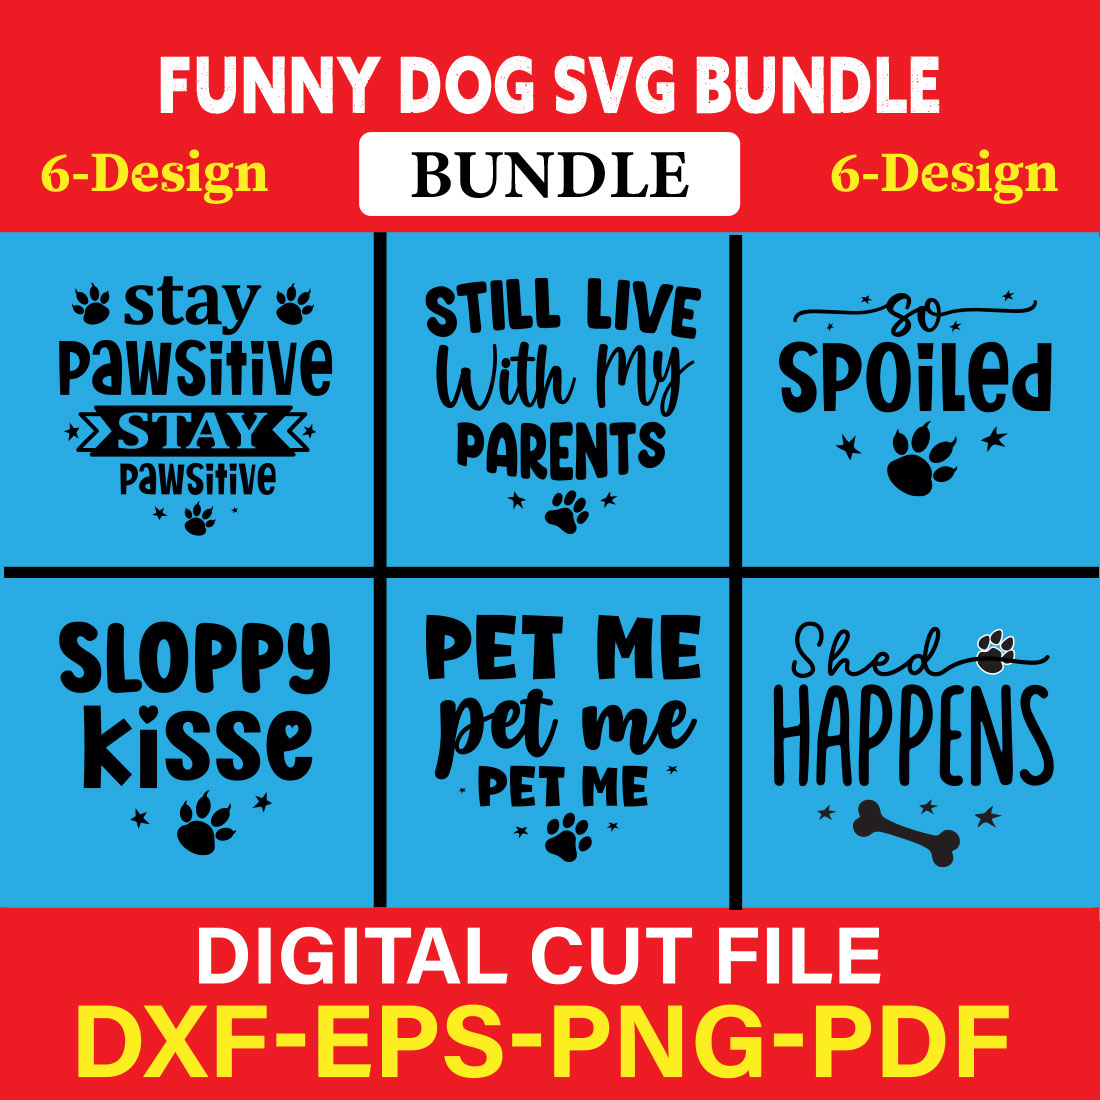 Funny Dog T-shirt Design Bundle Vol-5 cover image.